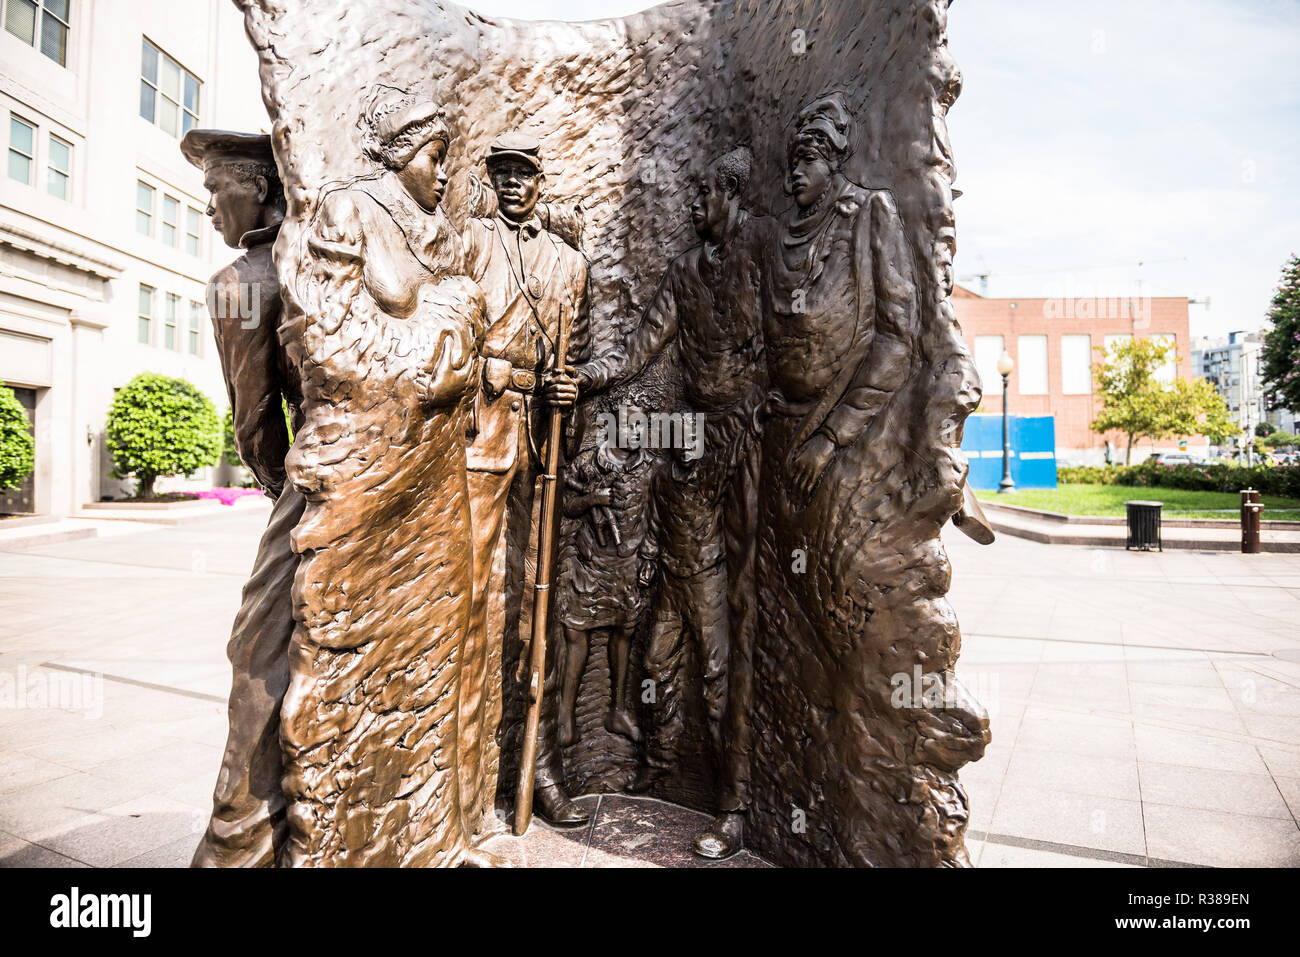 WASHINGTON, DC - l'African American Civil War Memorial commémore le service de 209 145 soldats afro-américains et environ 7 000 2 145 soldats blancs et hispaniques, s'élevant à près de 220 000 à environ 20 000, plus les marins non séparées, qui se sont battus pour l'Union dans la guerre civile américaine, principalement parmi les 175 régiments de troupes de couleur aux États-Unis. Au cœur du mémorial est une sculpture par Ed Hamilton intitulé l'esprit de liberté. Elle est entourée par des panneaux indiquant les noms de ceux qui ont servi pendant la guerre. Le musée est situé dans le nord-ouest de Washington DC dans la rue U nei Banque D'Images